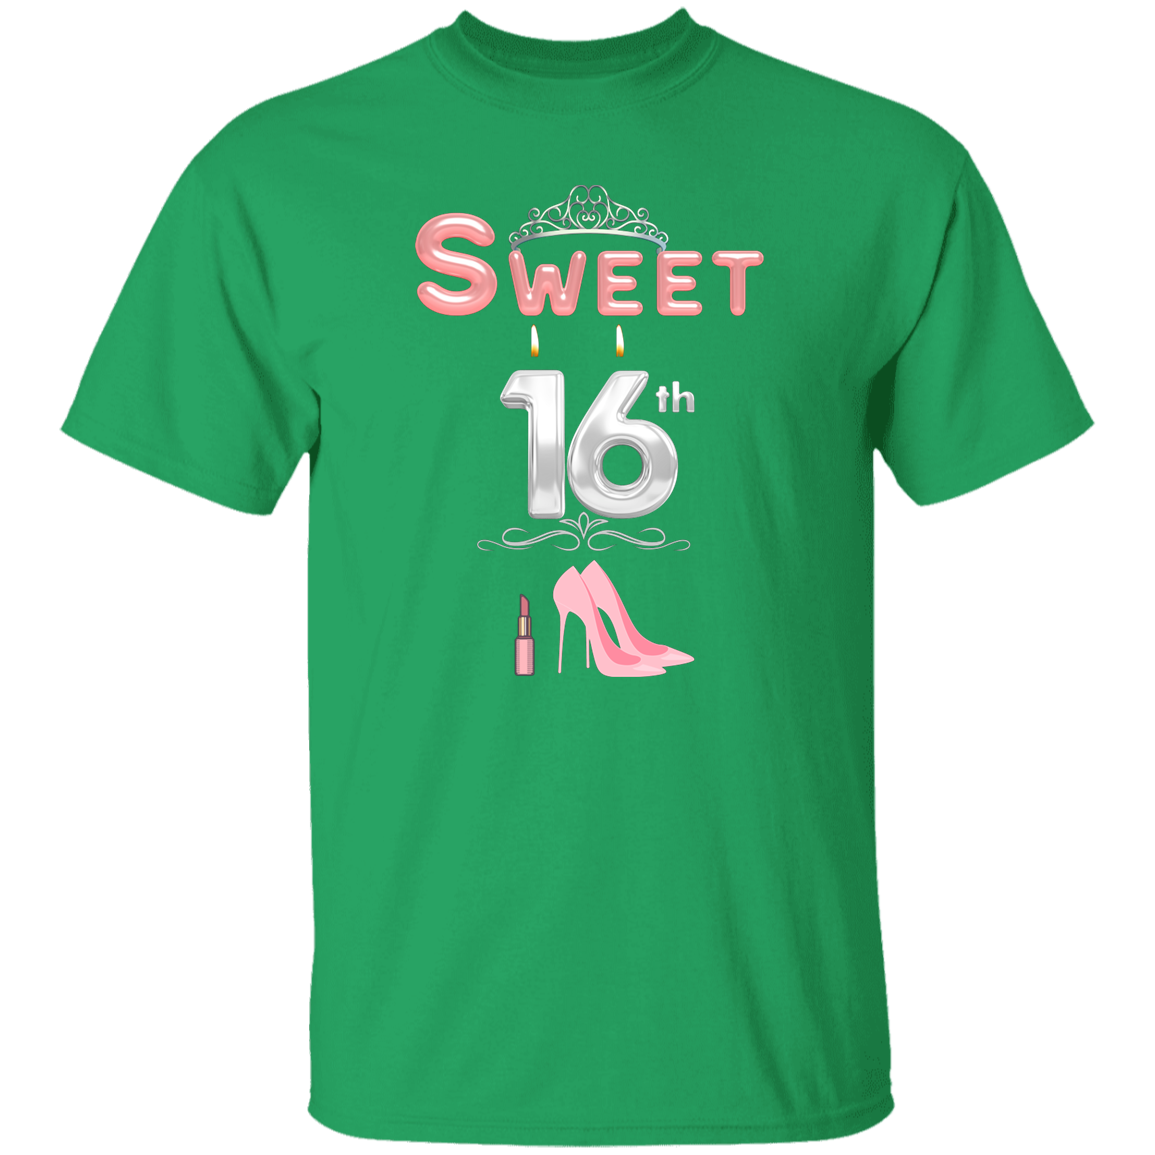 Sweet 16 Pink Heels T-Shirt